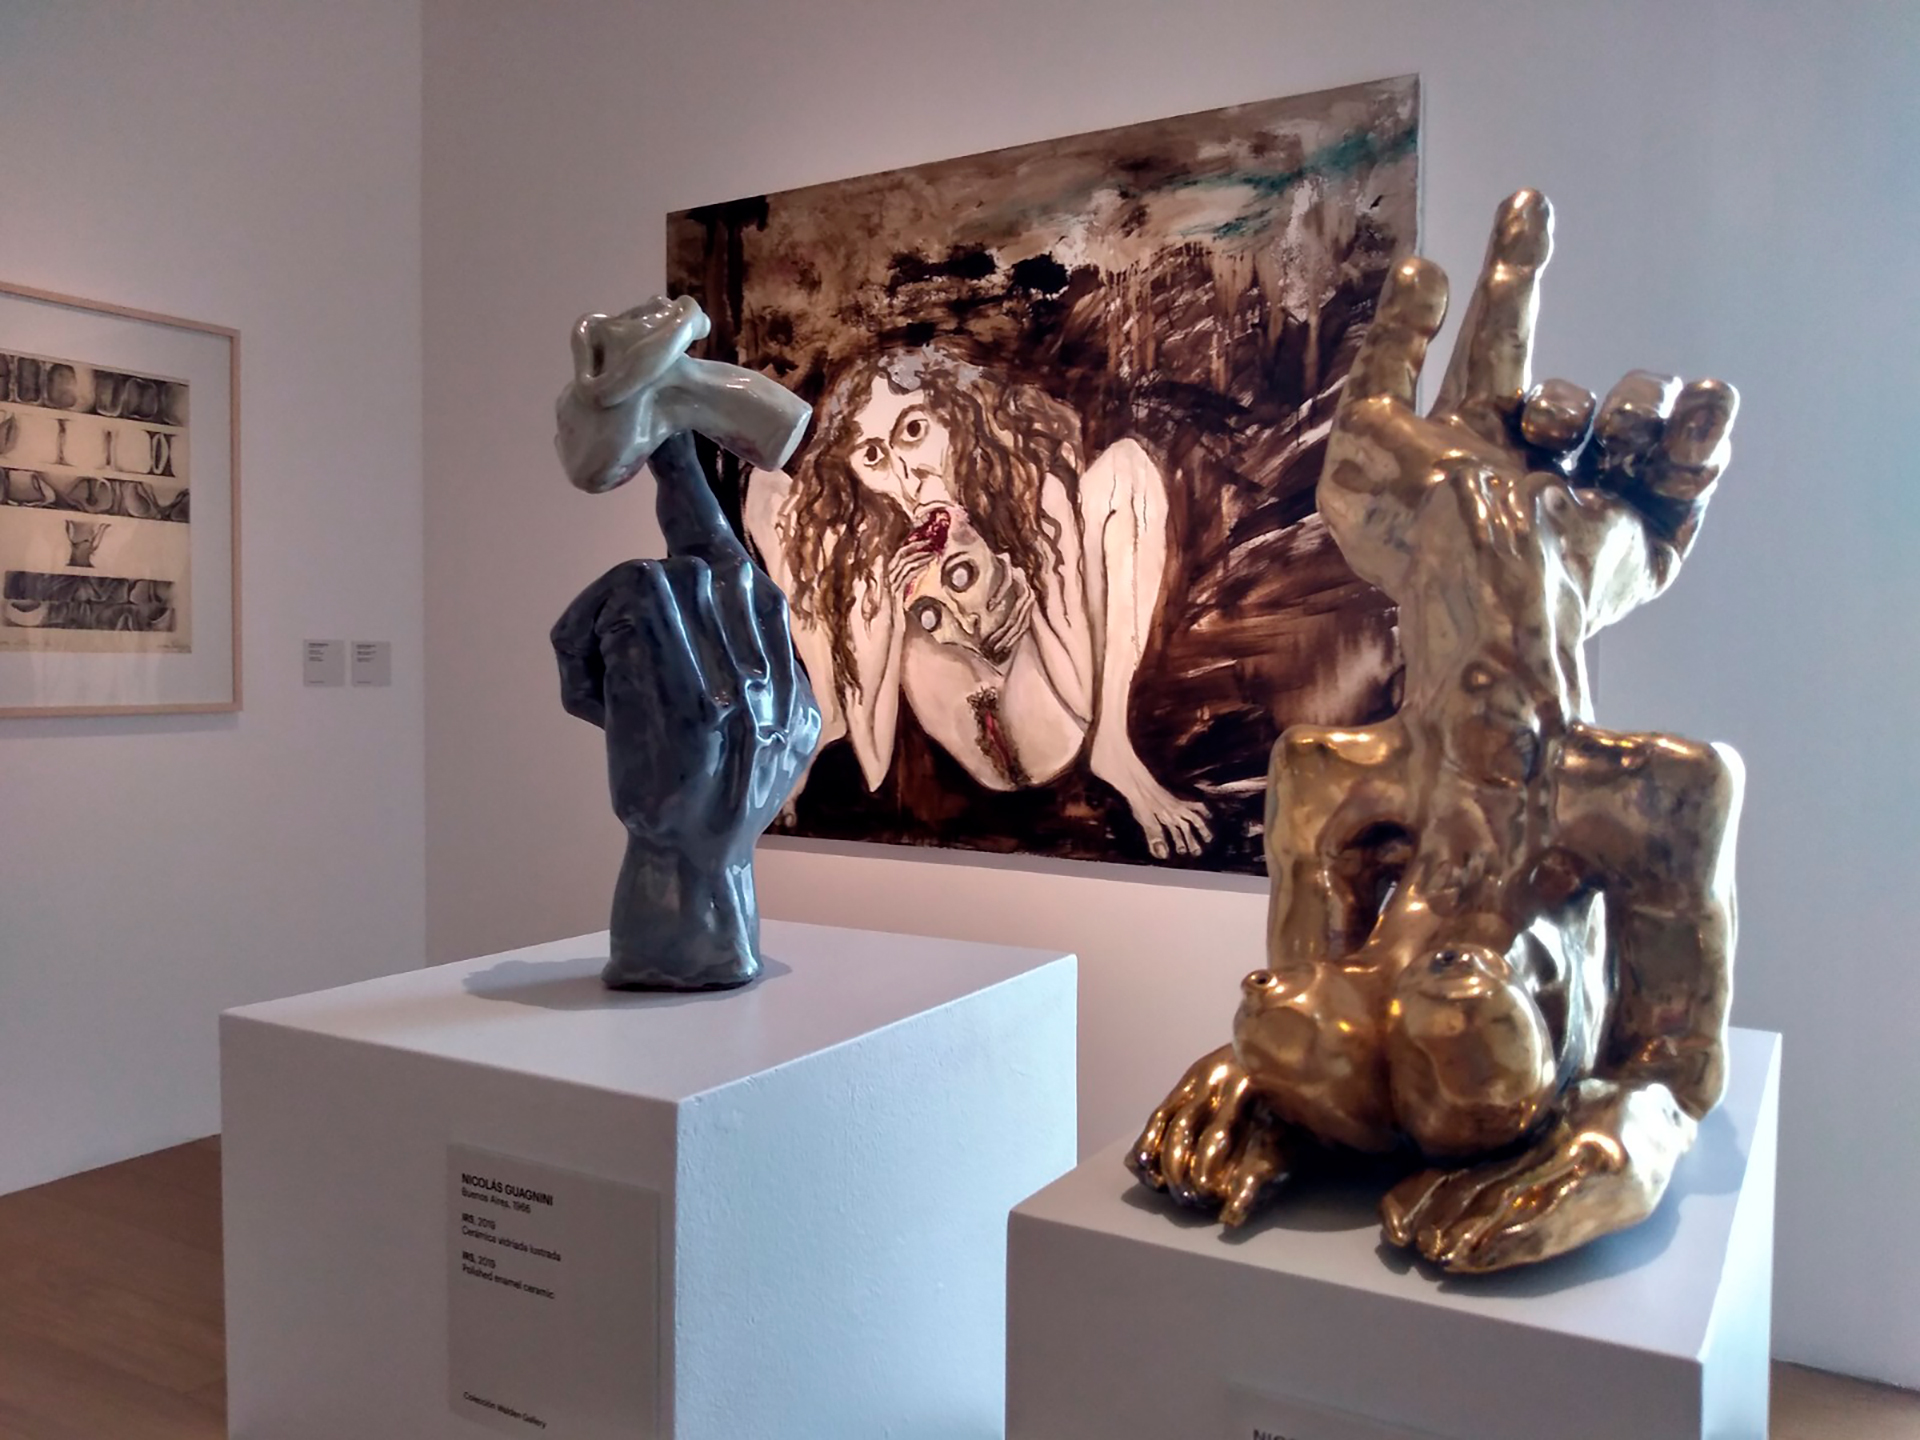 Al frente una serie de esculturas de Nicolás Guagnini y detrás la pintura  “Con rabia roía el cráneo por dentro y por fuera", de la serie psicoanálisis de Marcia Schwarz  